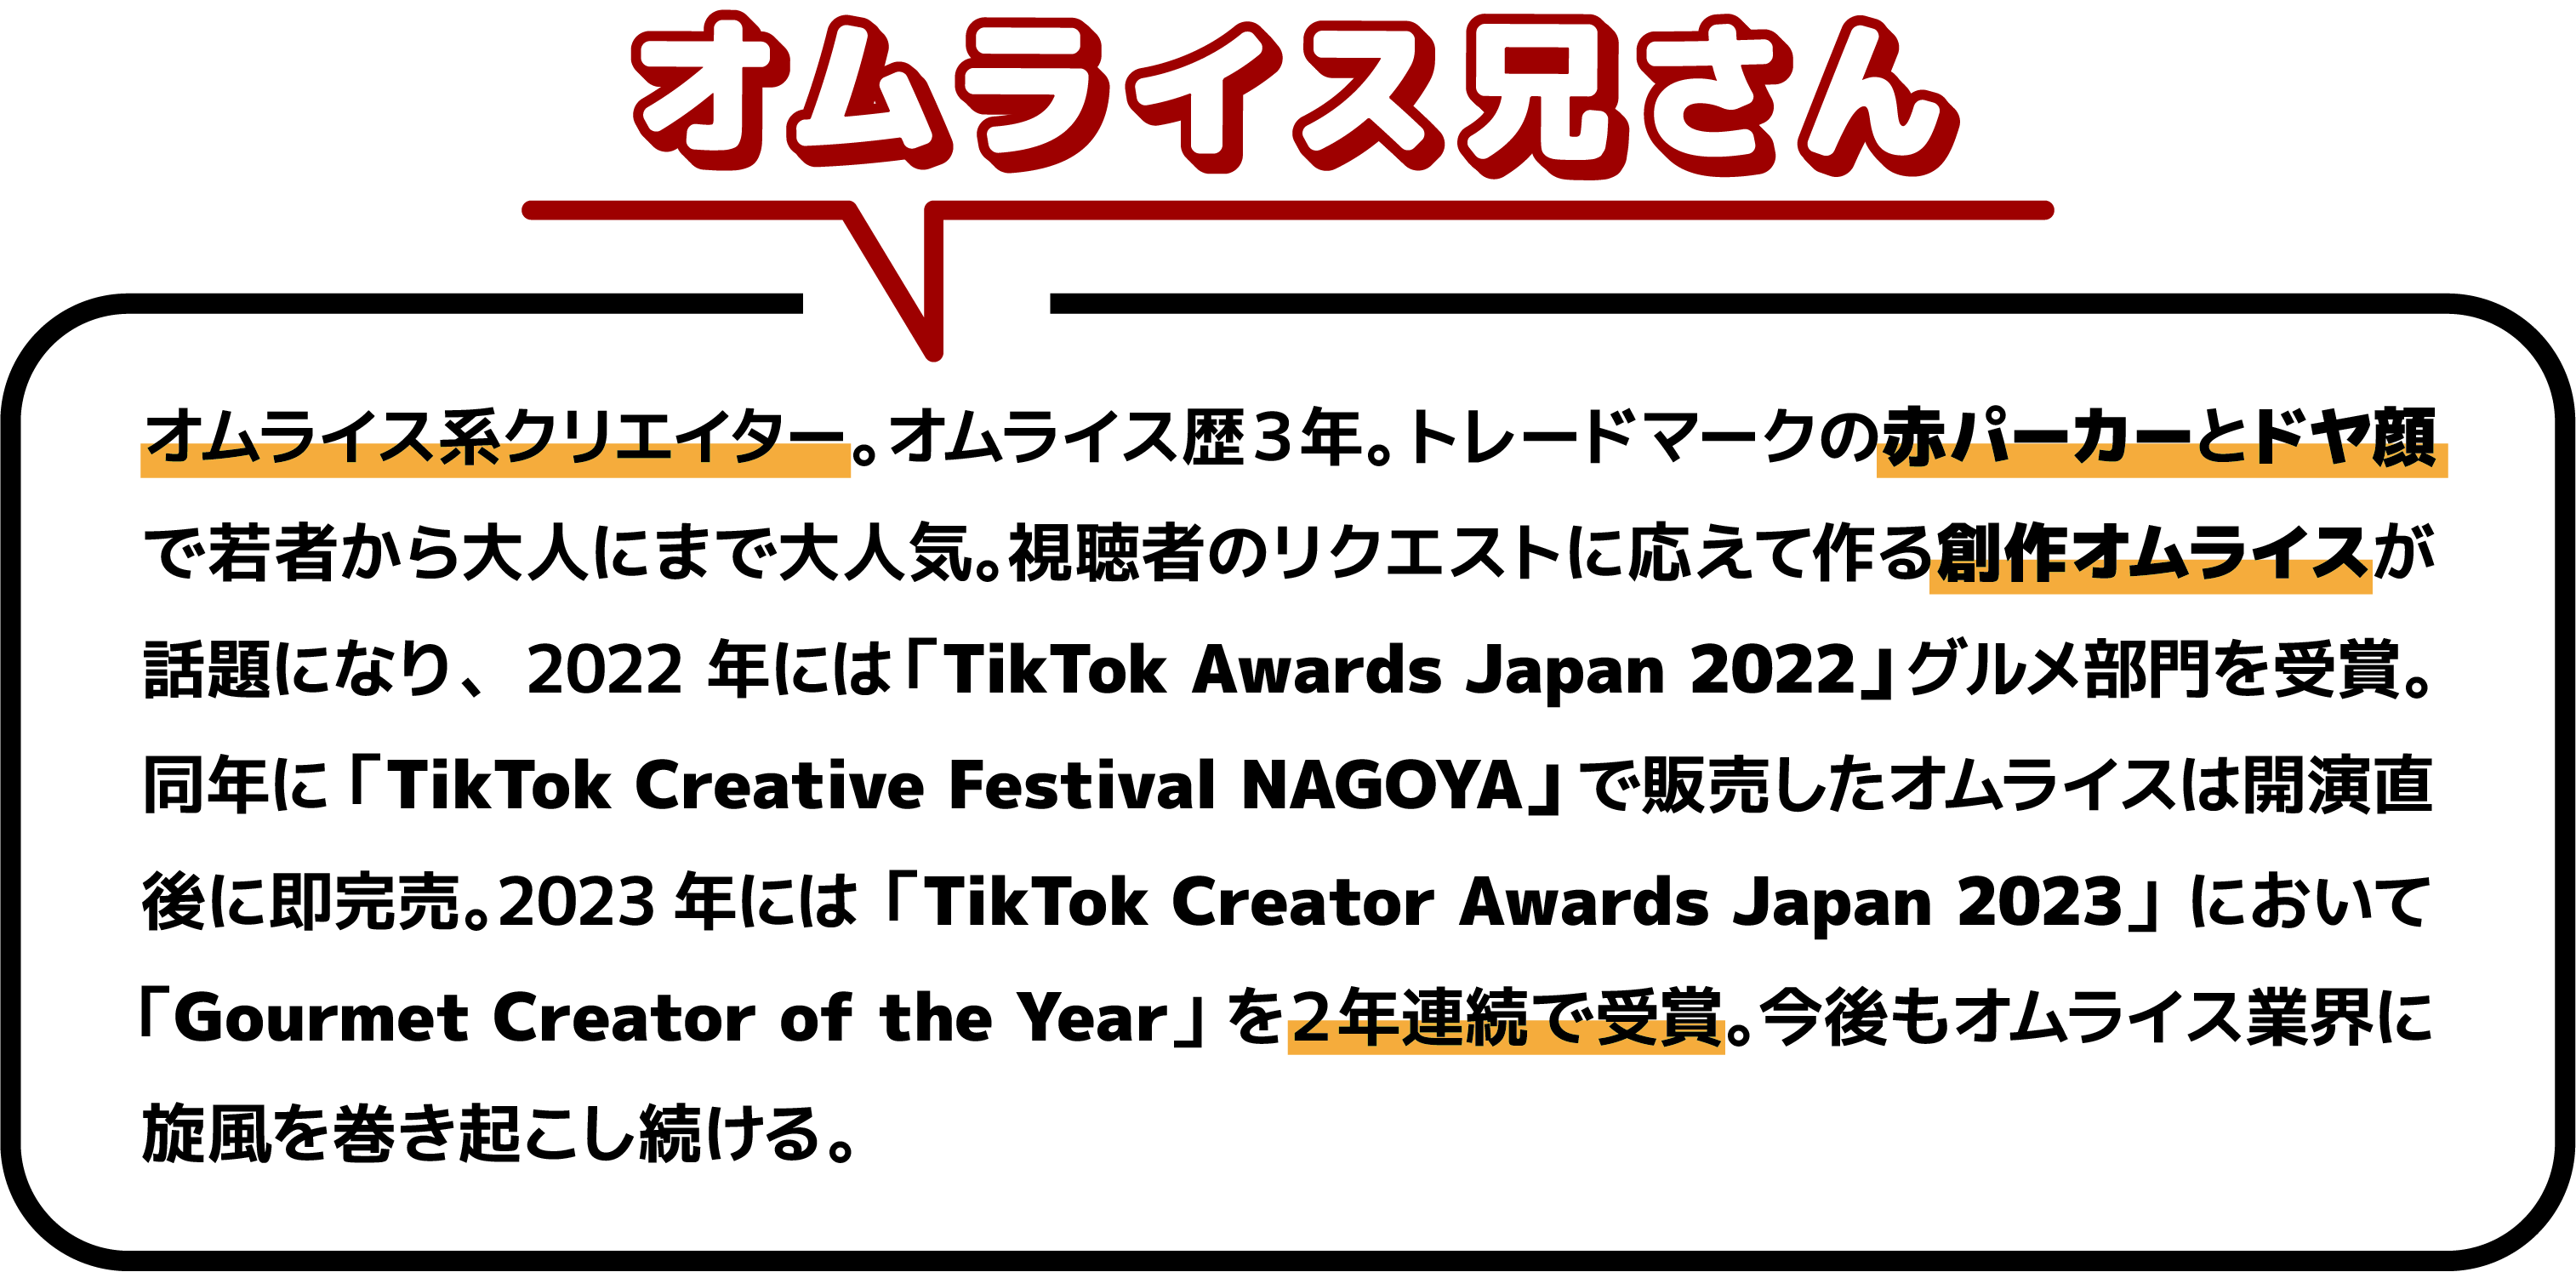 オムライス系クリエイター。オムライス歴３年。トレードマークの赤パーカーとドヤ顔で若者から大人にまで大人気。視聴者のリクエストに応えて作る創作オムライスが話題になり、2022 年には「TikTok Awards Japan 2022」グルメ部門を受賞。同年に「TikTok Creative Festival NAGOYA」で販売したオムライスは開演直後に即完売。2023年には「TikTok Creator Awards Japan 2023」において「Gourmet Creator of the Year」を２年連続で受賞。今後もオムライス業界に旋風を巻き起こし続ける。